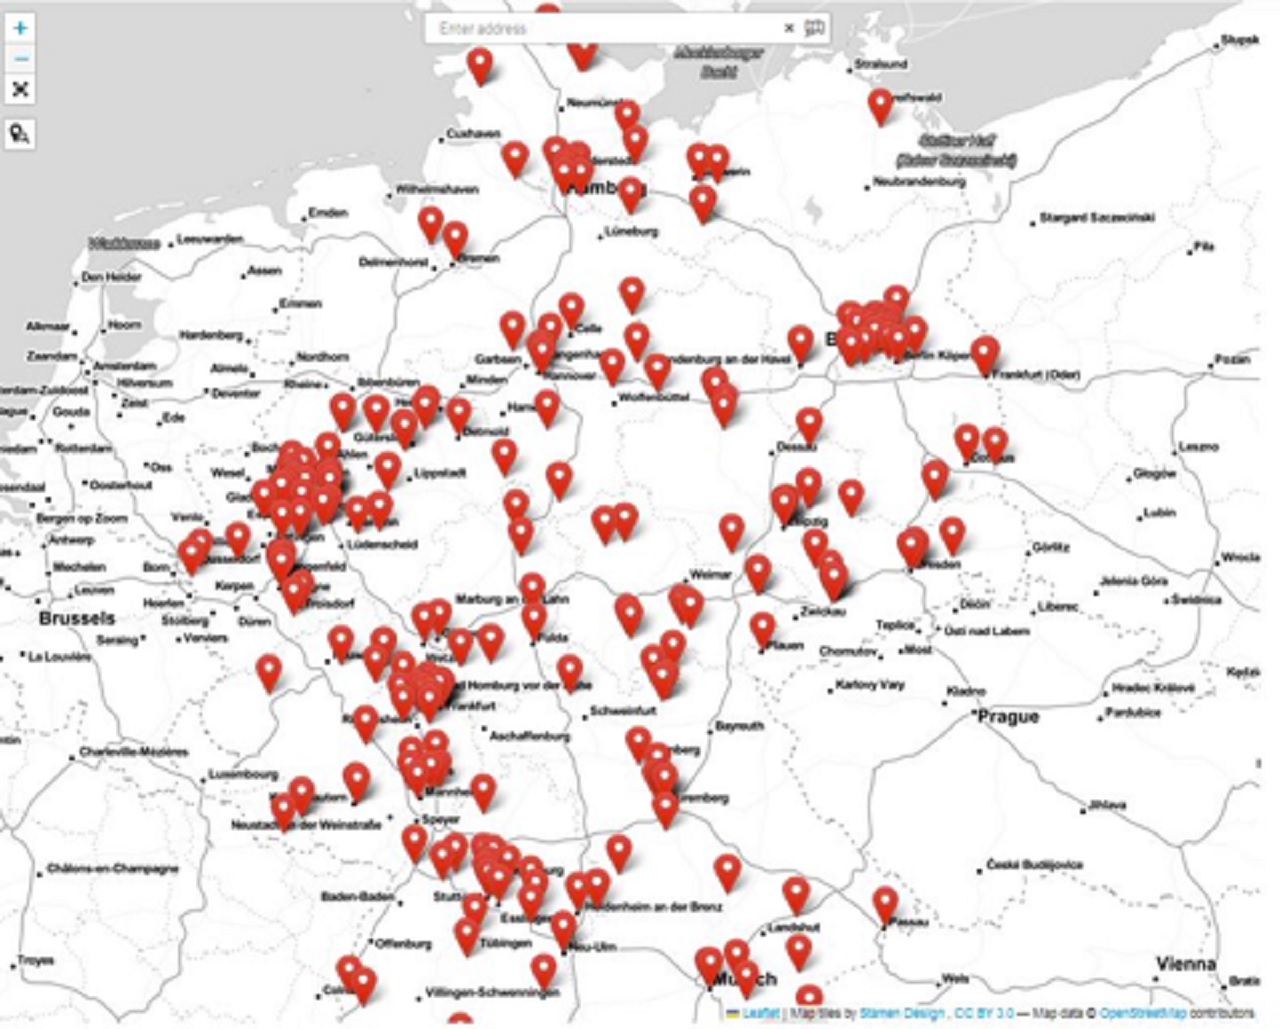 Nemecko: Nová mapa sledujúca kriminalitu migrantov v celej krajine potvrdila, čo všetci vedia